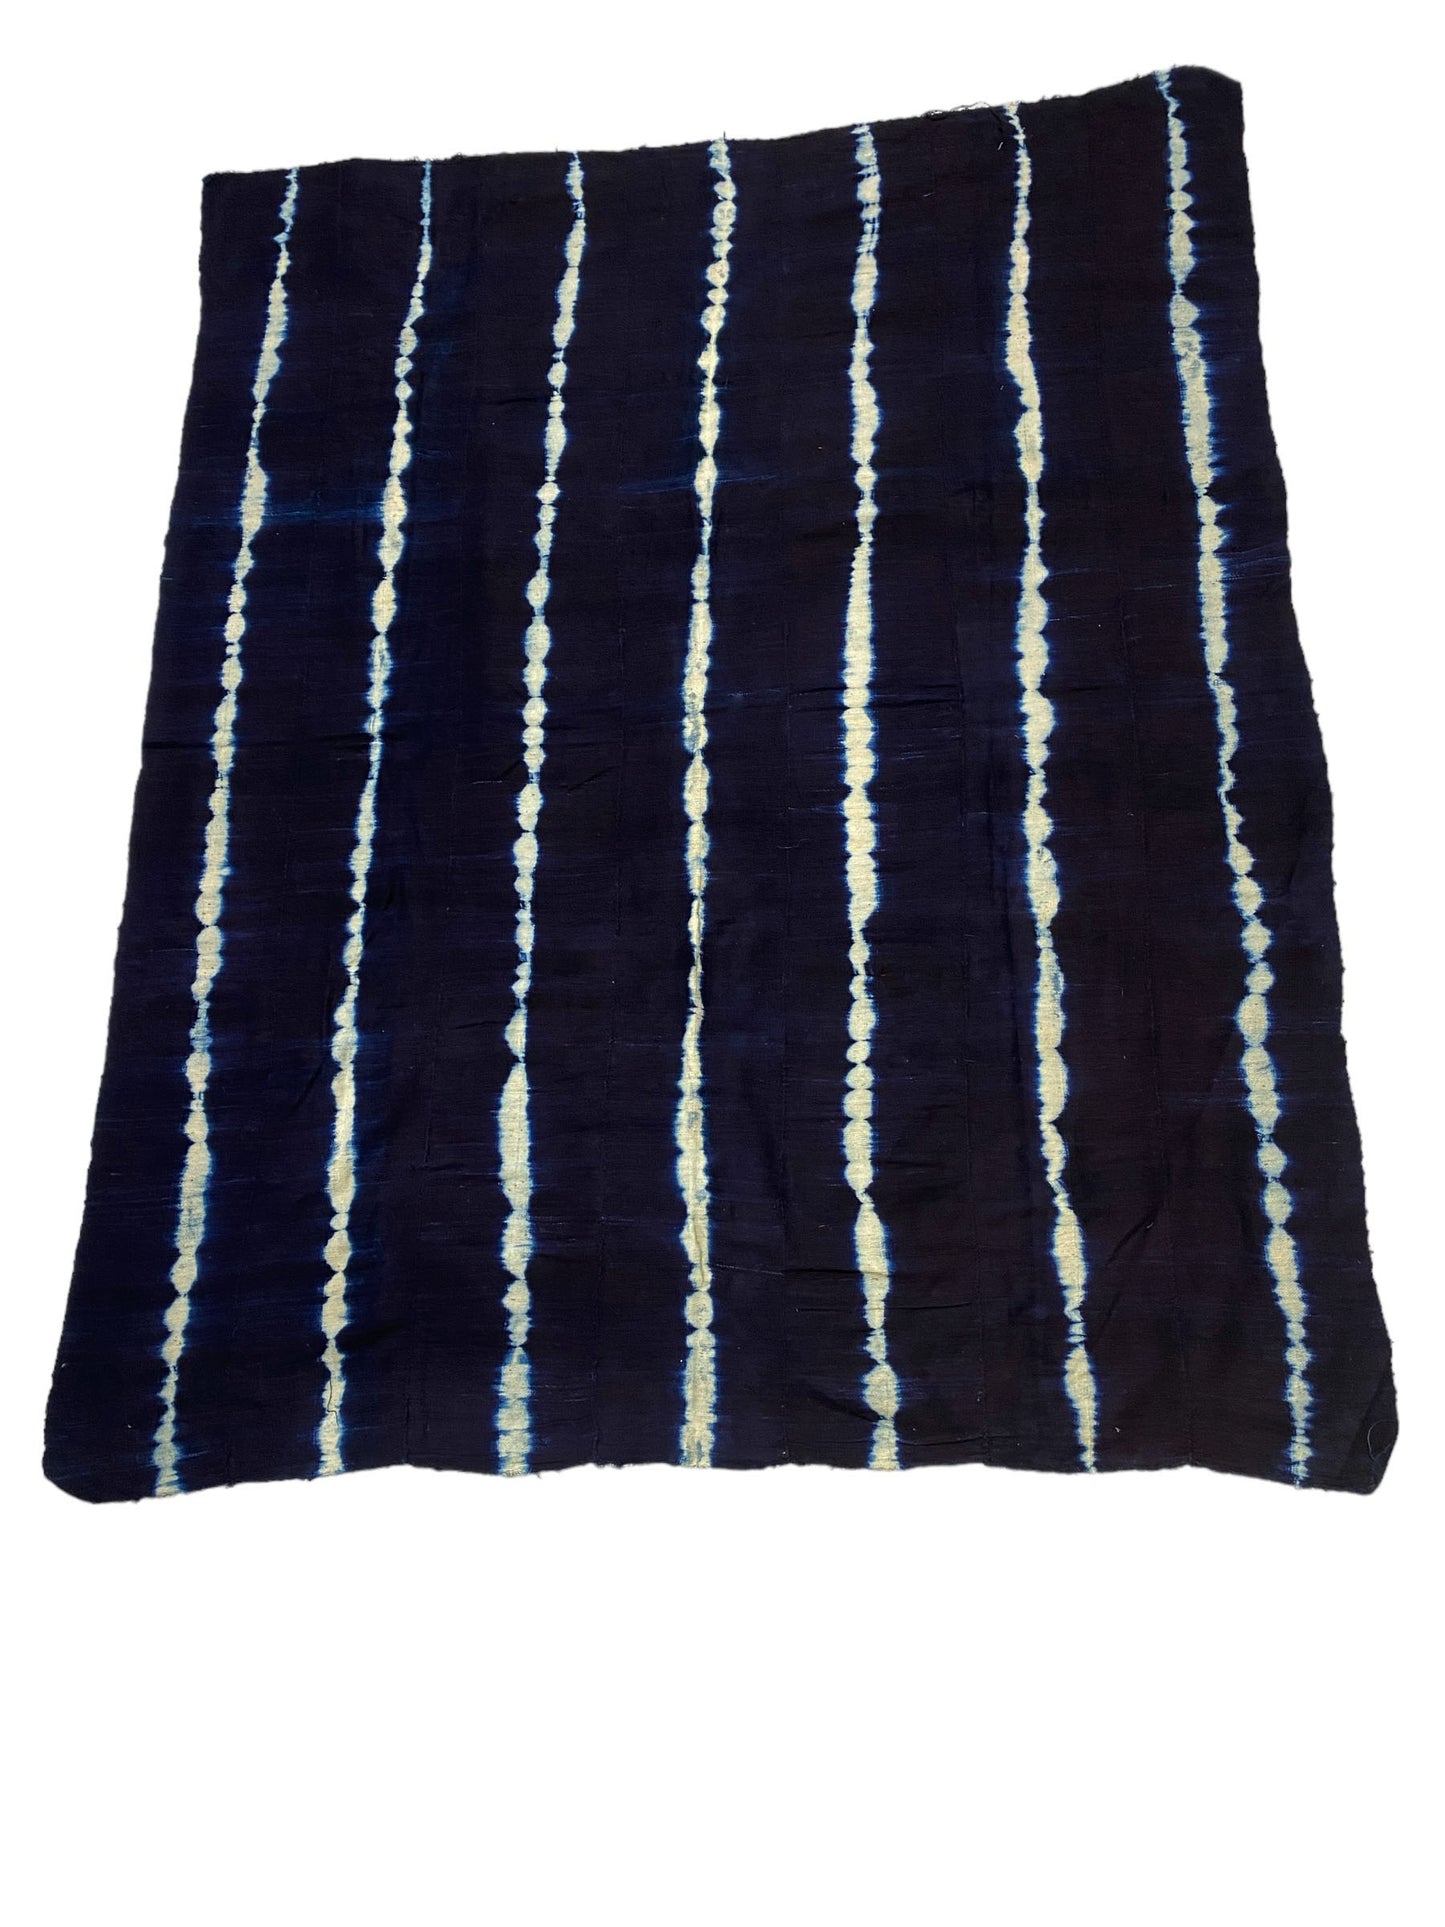 #1026A Fine Weaving Mali Indigo Mud Cloth Textile 47" by 60"